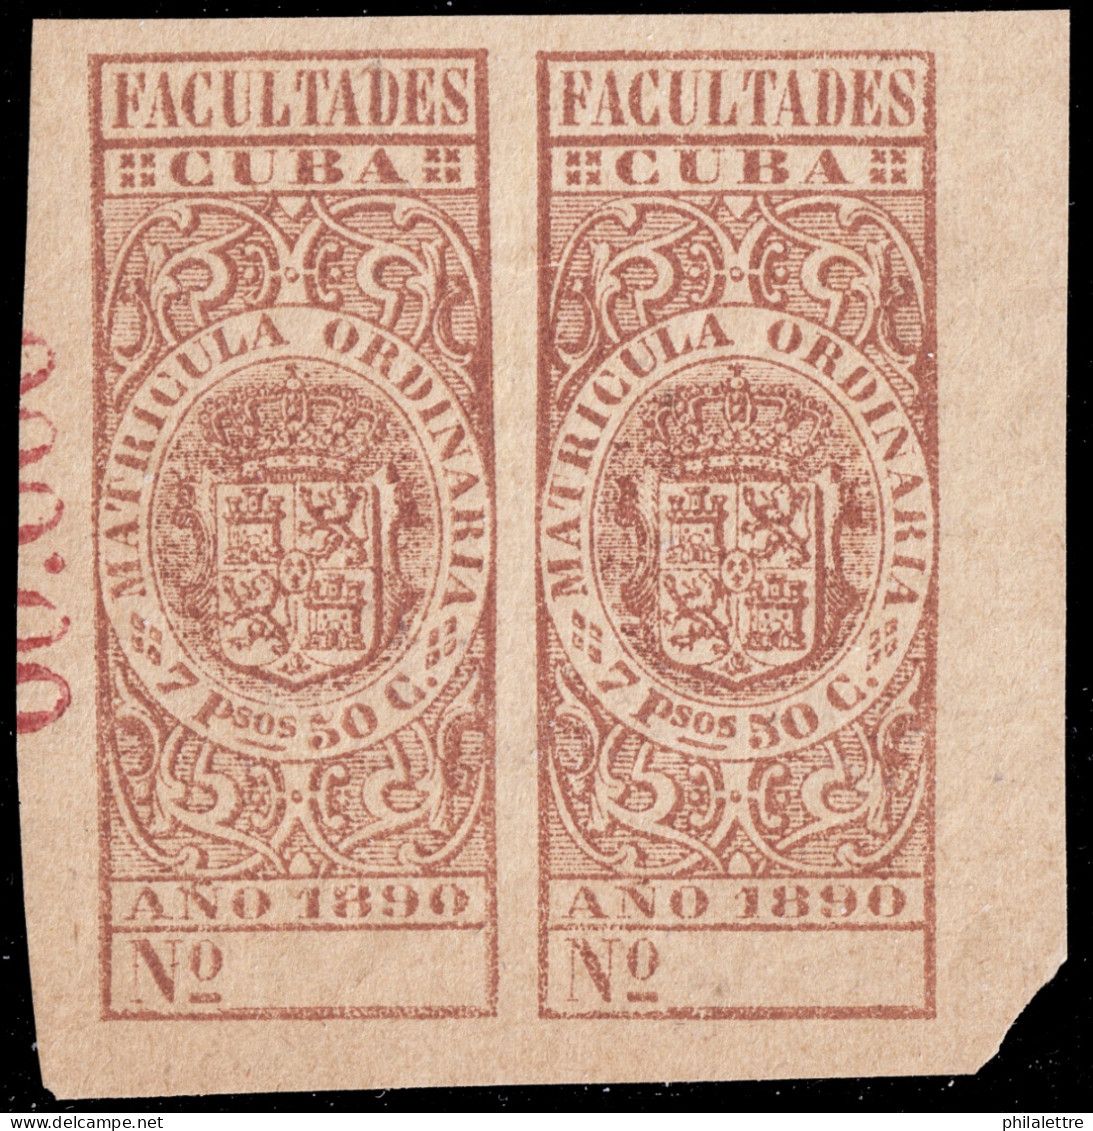 ESPAGNE / ESPANA - COLONIAS (Cuba) 1890 Matricula Ordinaria "FACULTADES" Fulcher 1059 2x 7P50 MUESTRA (00.000) - Nuevo** - Cuba (1874-1898)